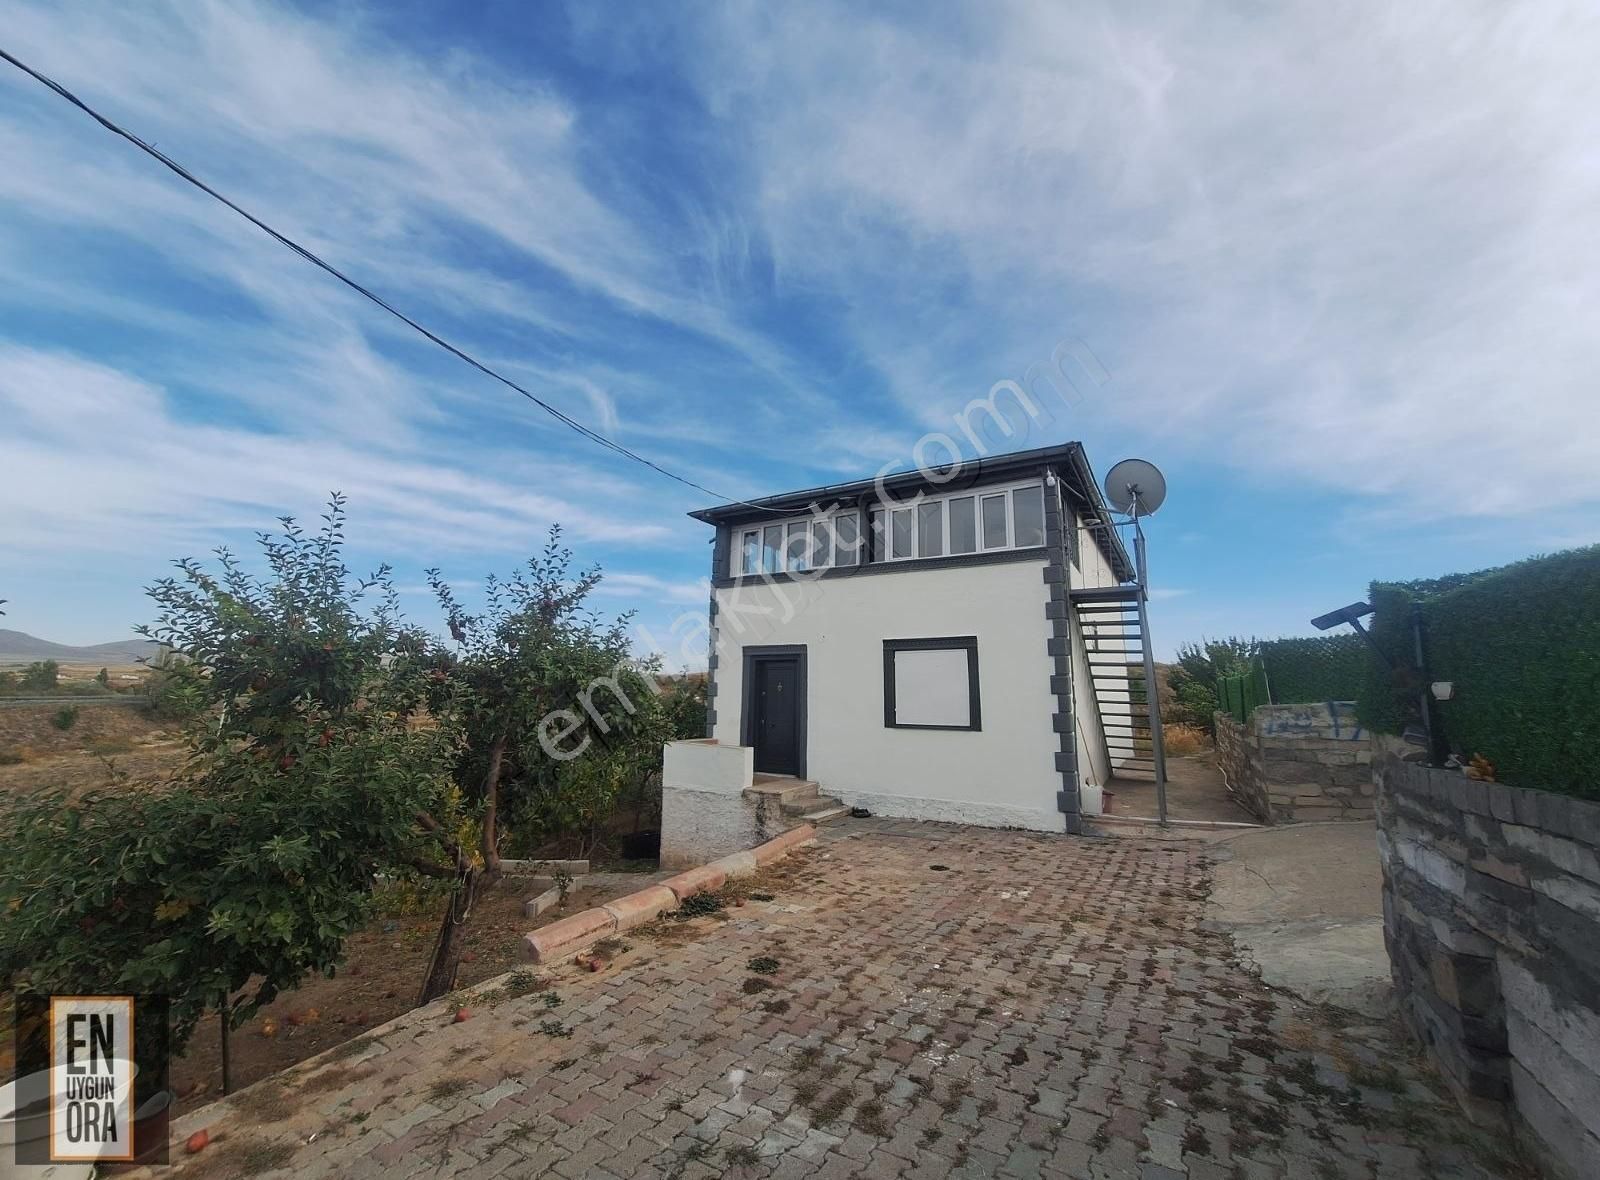 Avanos Bozca Köyü (Afet Evleri Kümesi) Satılık Çiftlik Evi  NEVŞEHİR AVANOS YOLUNA SIFIR SATILIK ÇİFTLİK